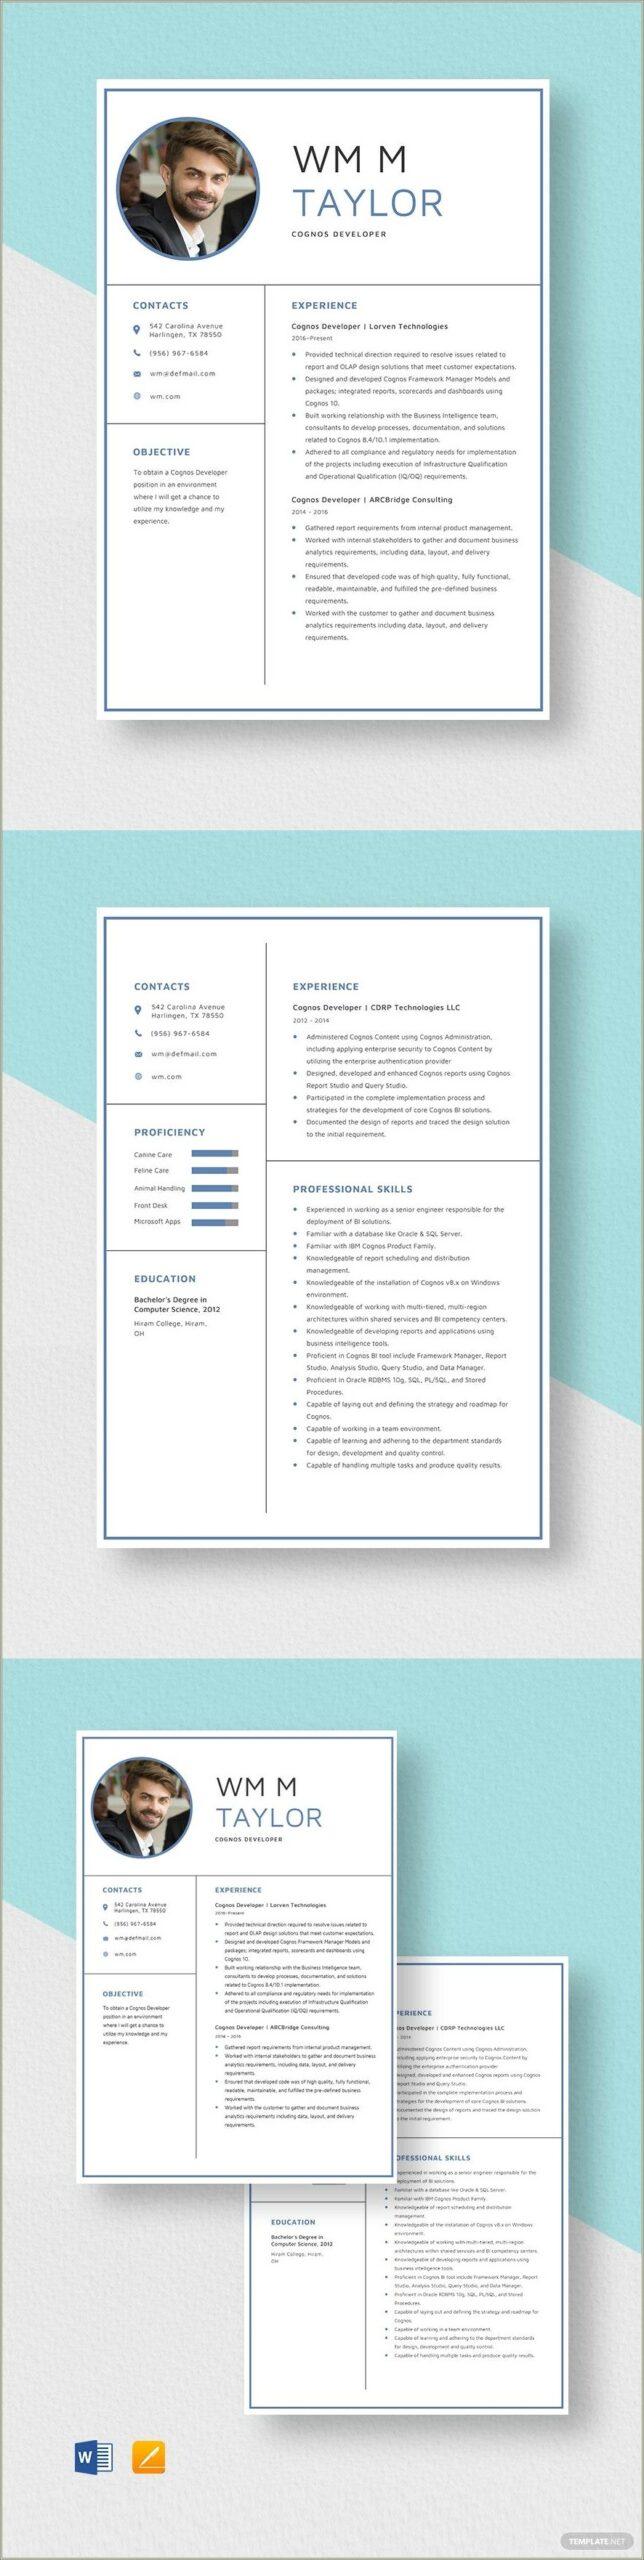 Sample Resume For Experienced Cognos Report Developer